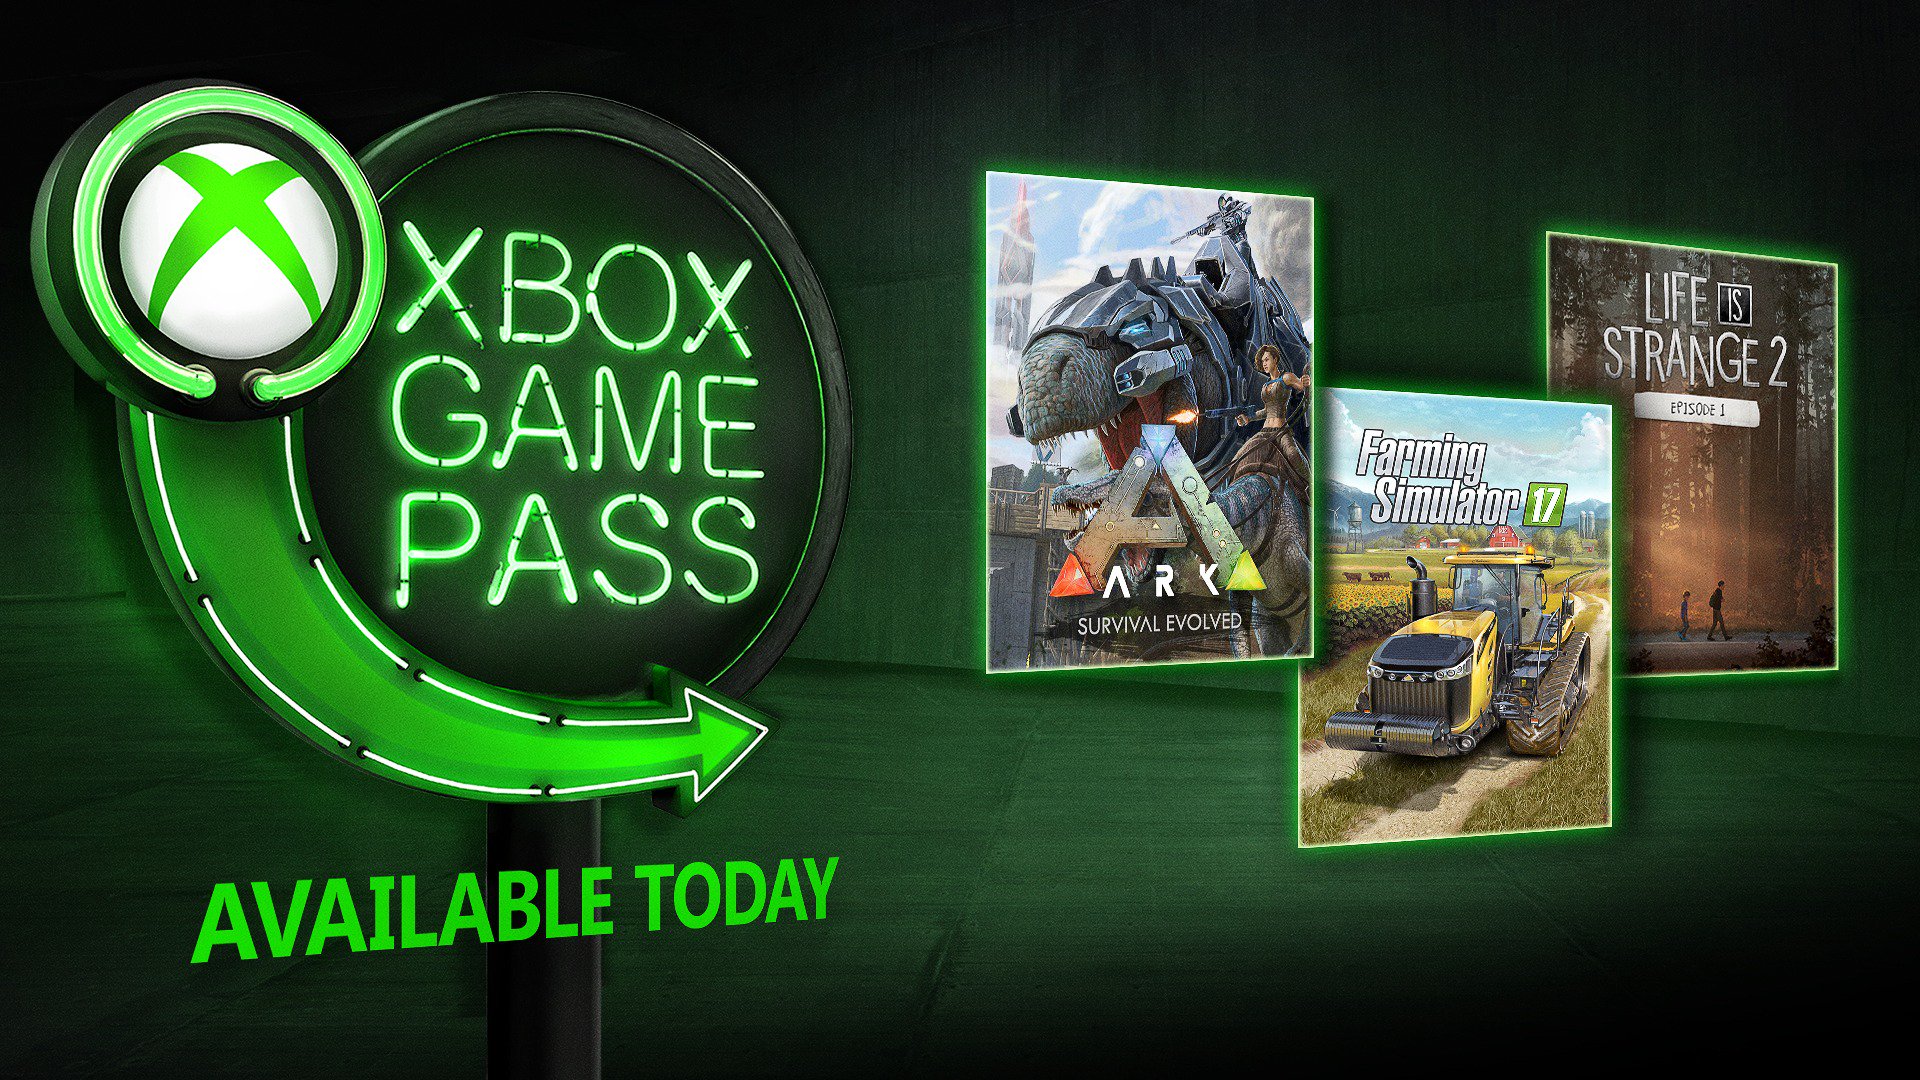 Xbox игры жизни. Лучшие игры Xbox game Pass. Игры на двоих в Xbox game Pass. Реклама хбокс игры.